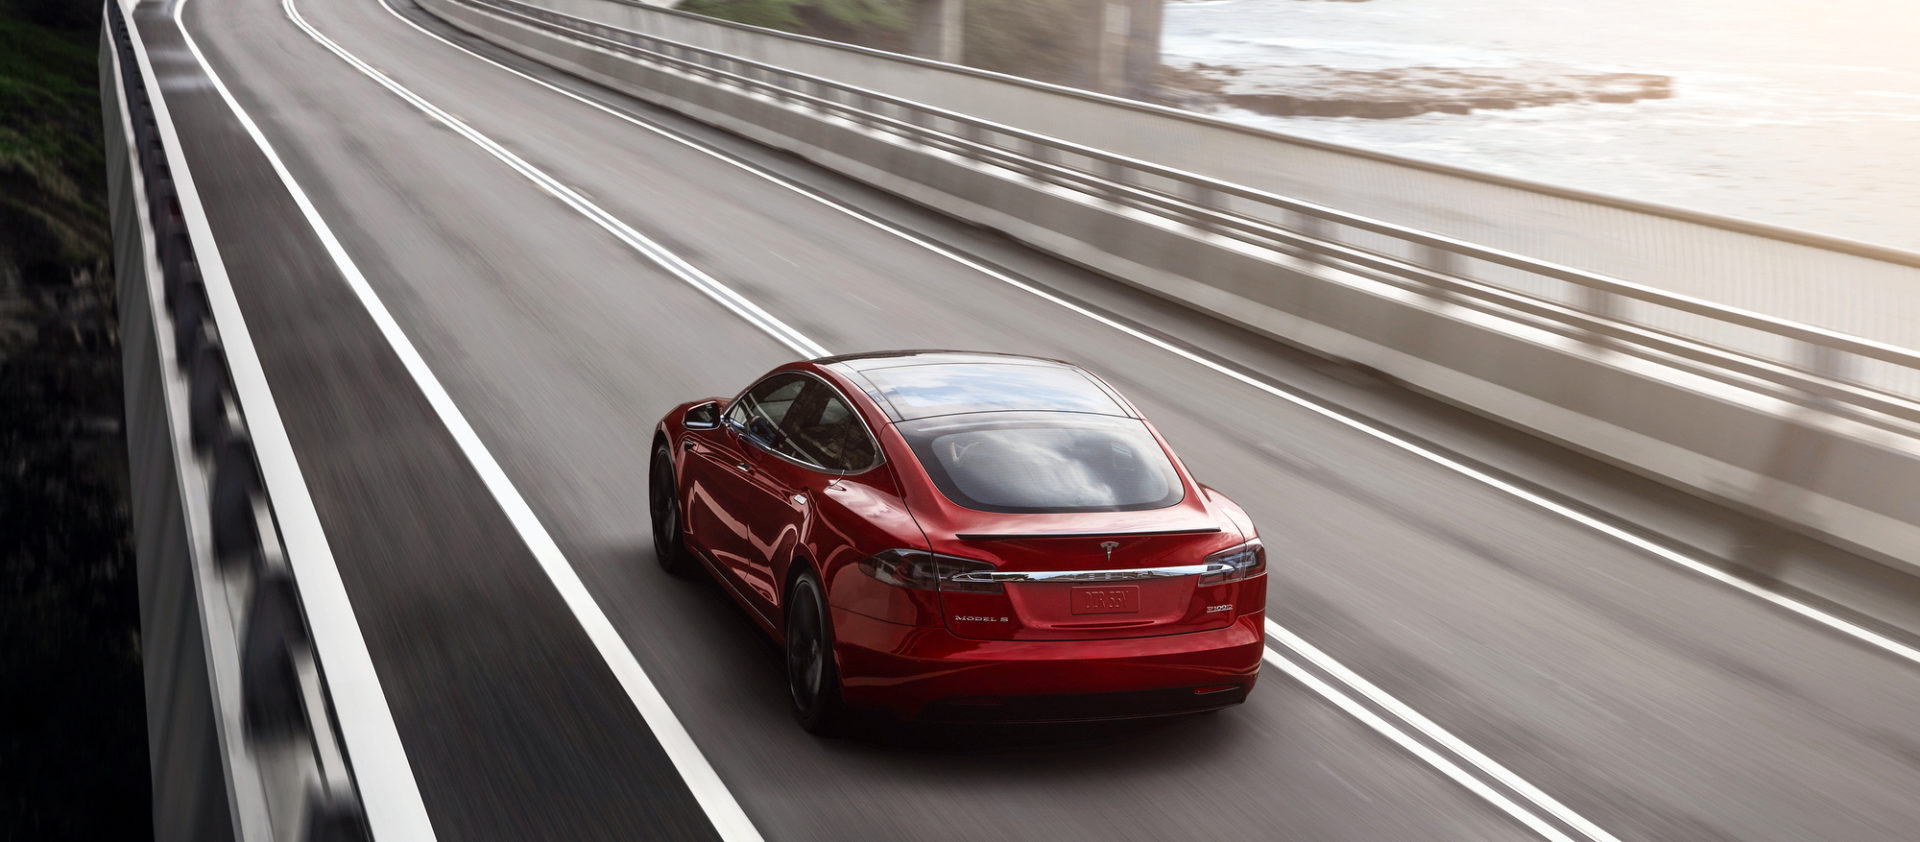 EV on the road, Tesla Model S